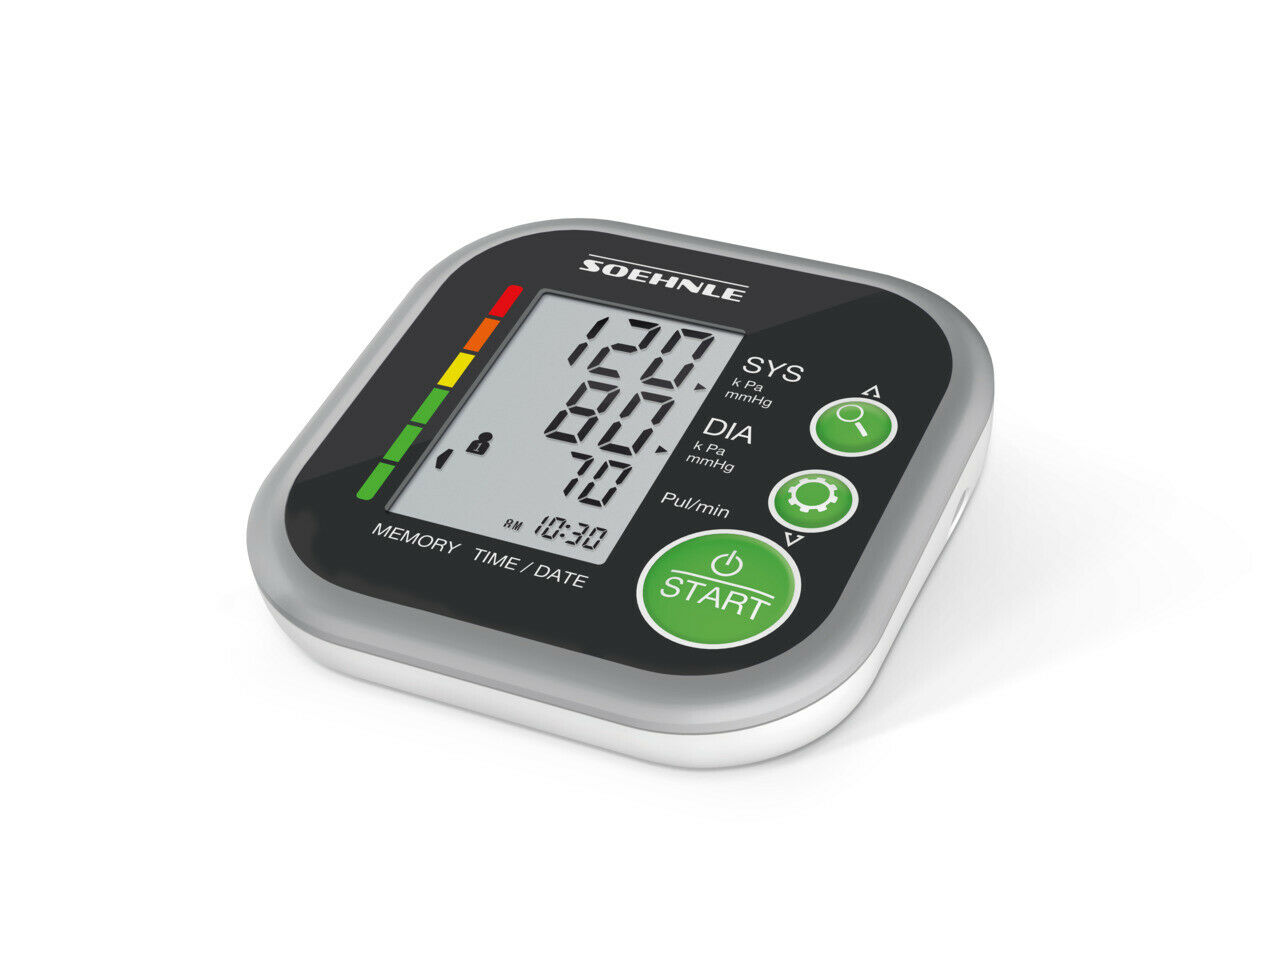 SOEHNLE - 68108 - Systo Monitor 200 - Blutdruckmessgerät Obe